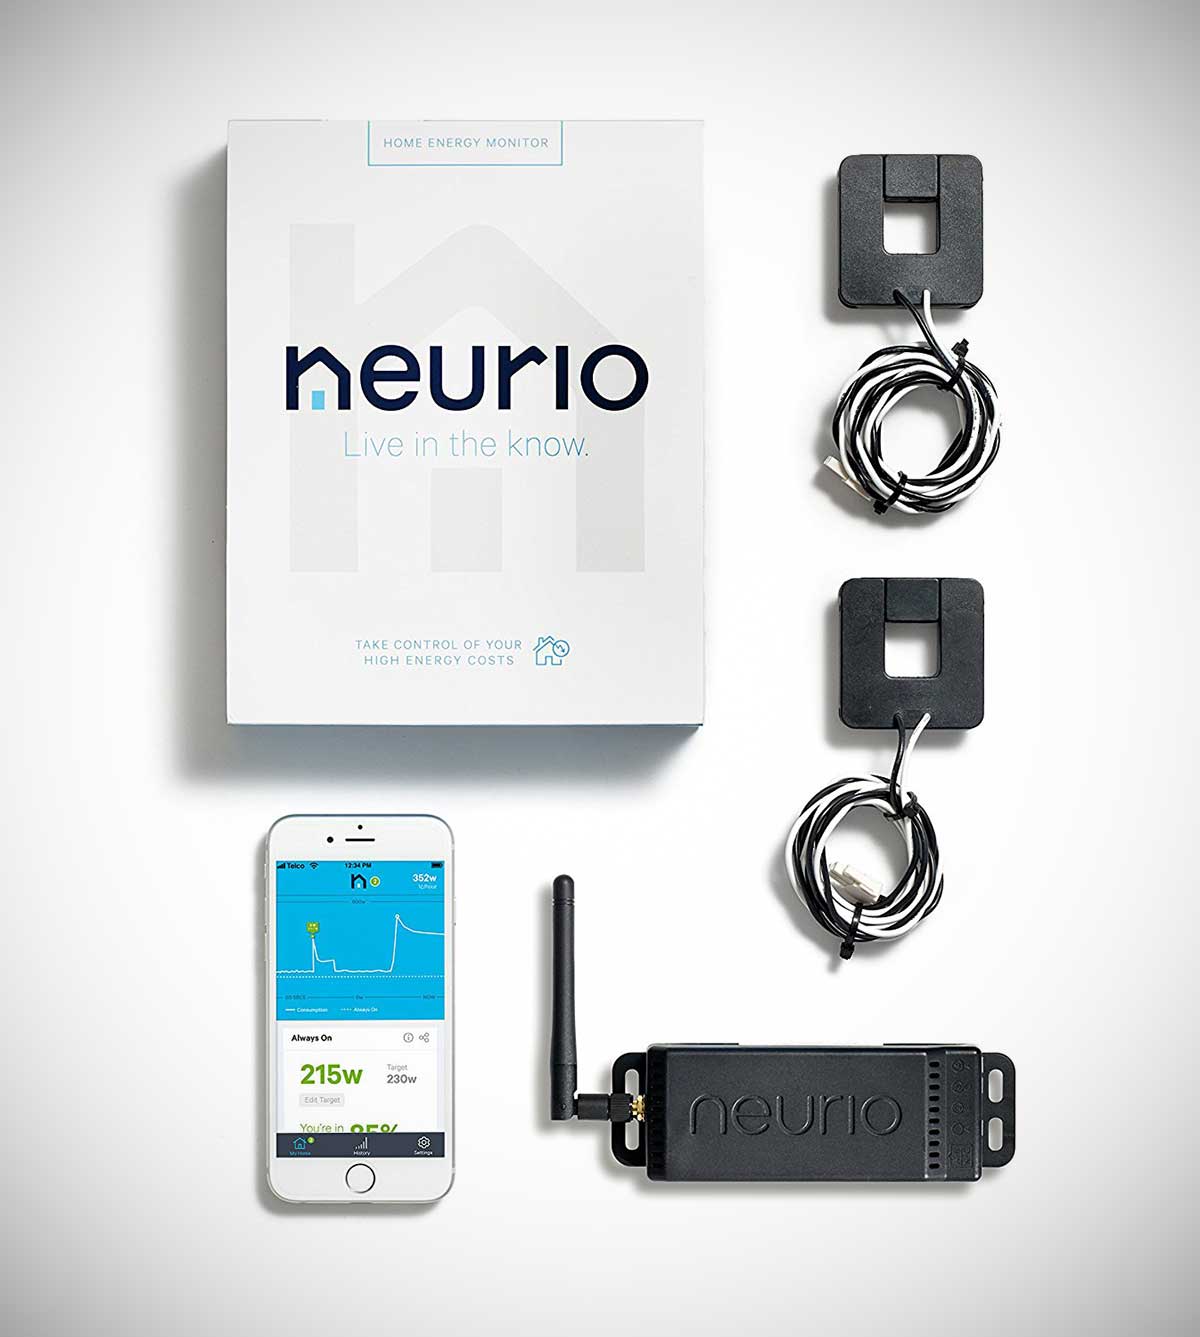 Neurio Home Energy Monitor